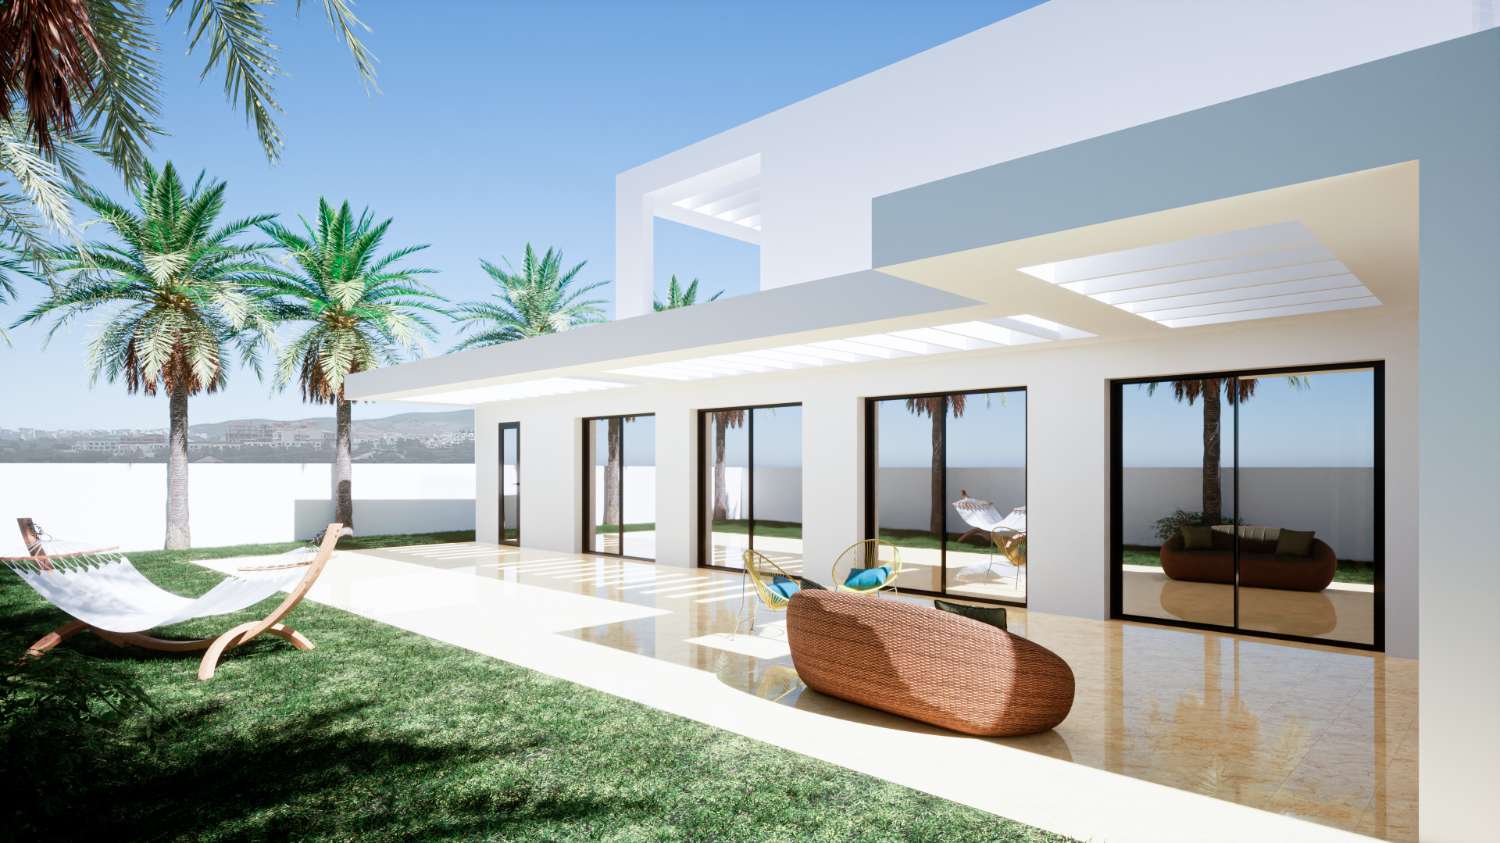 Villa de un nivel de 208 m2 sobre una parcela de 982 m2. Preciosas vistas al mar. En adicionales 229 m2 de terrazas.